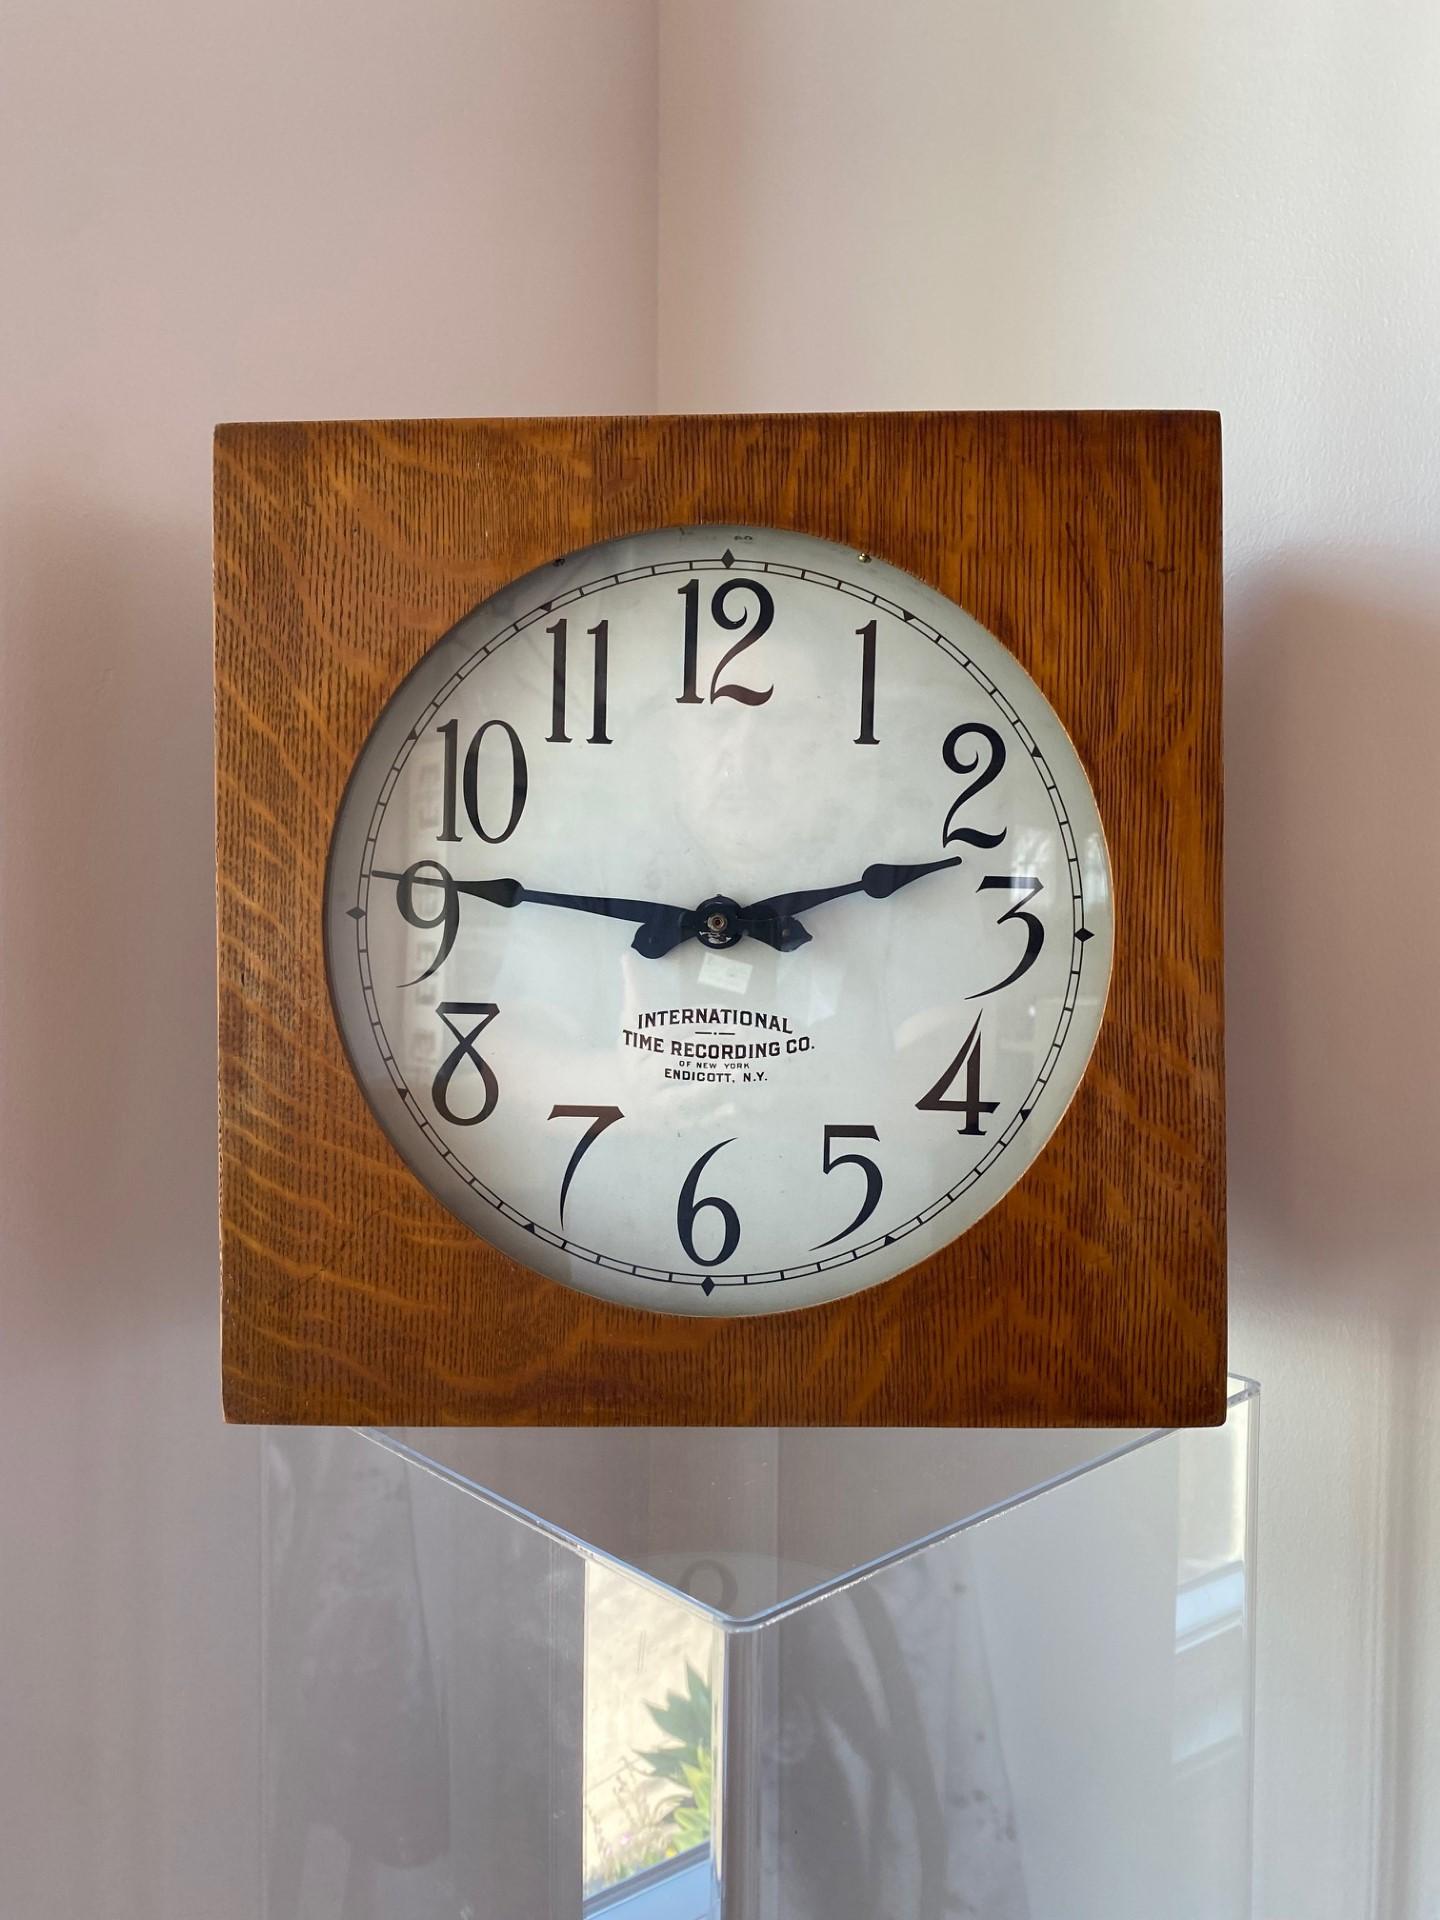 Schöne antike Uhr aus dem Jahr 1925 von der International Time Recording Company.  Dieses Stück wurde ursprünglich im gewerblichen/industriellen Bereich eingesetzt.  Der Zeitmesser ist in einem quadratischen Holzsockel mit Glas auf der Vorderseite